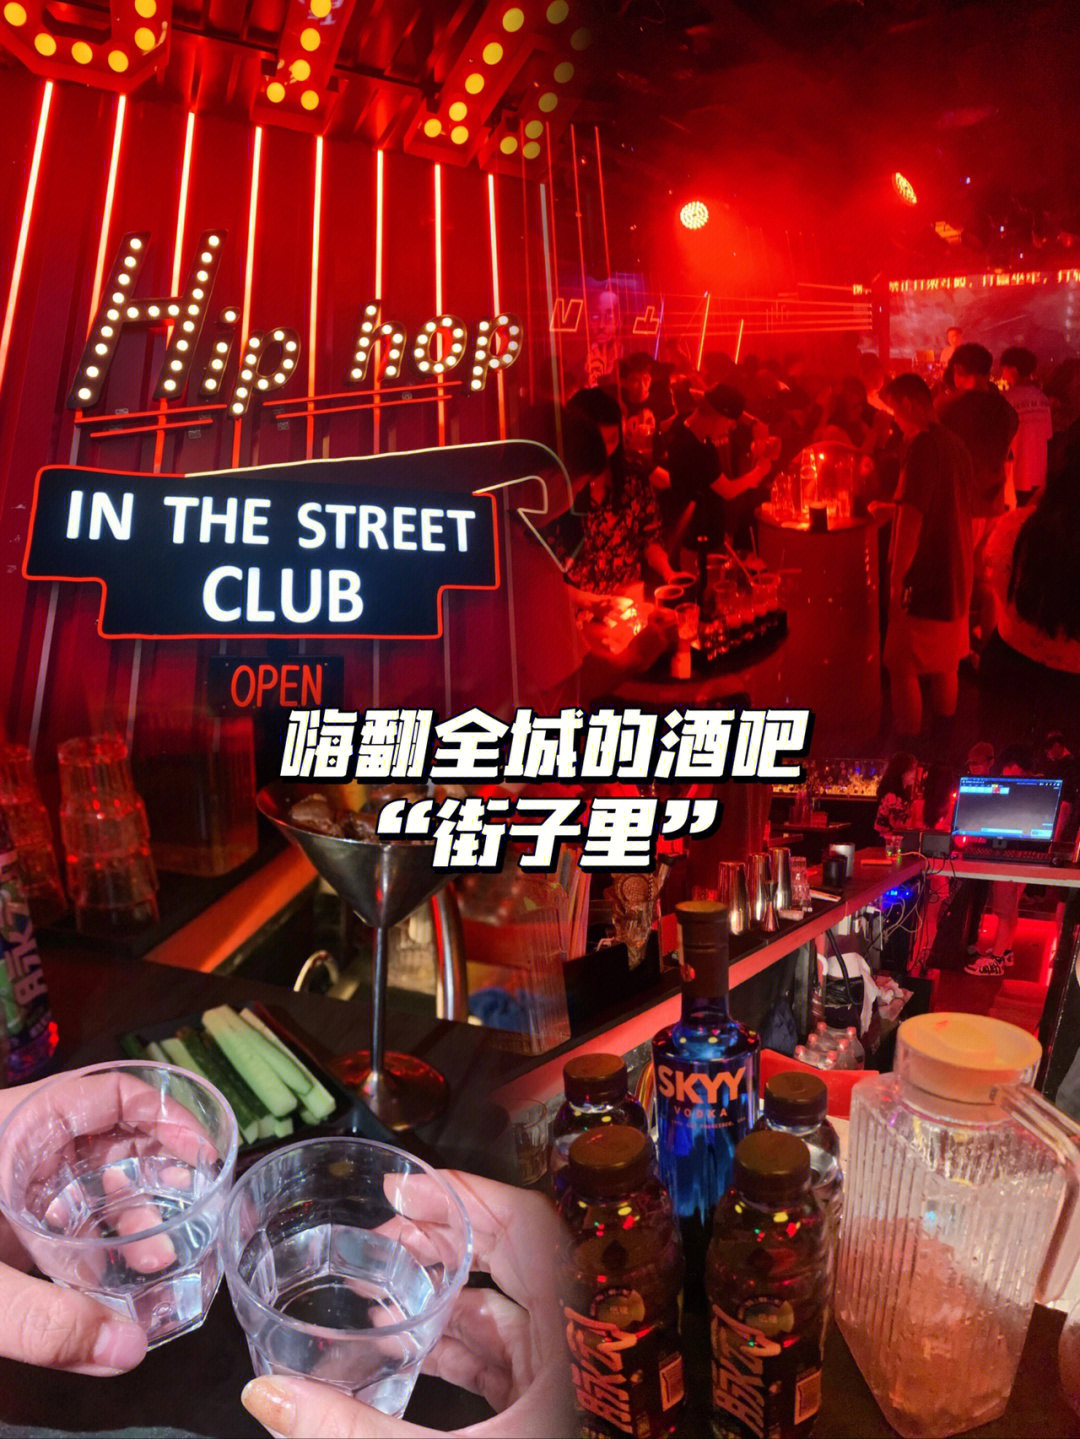 东莞探店嗨翻全城的嘻哈酒吧街子里